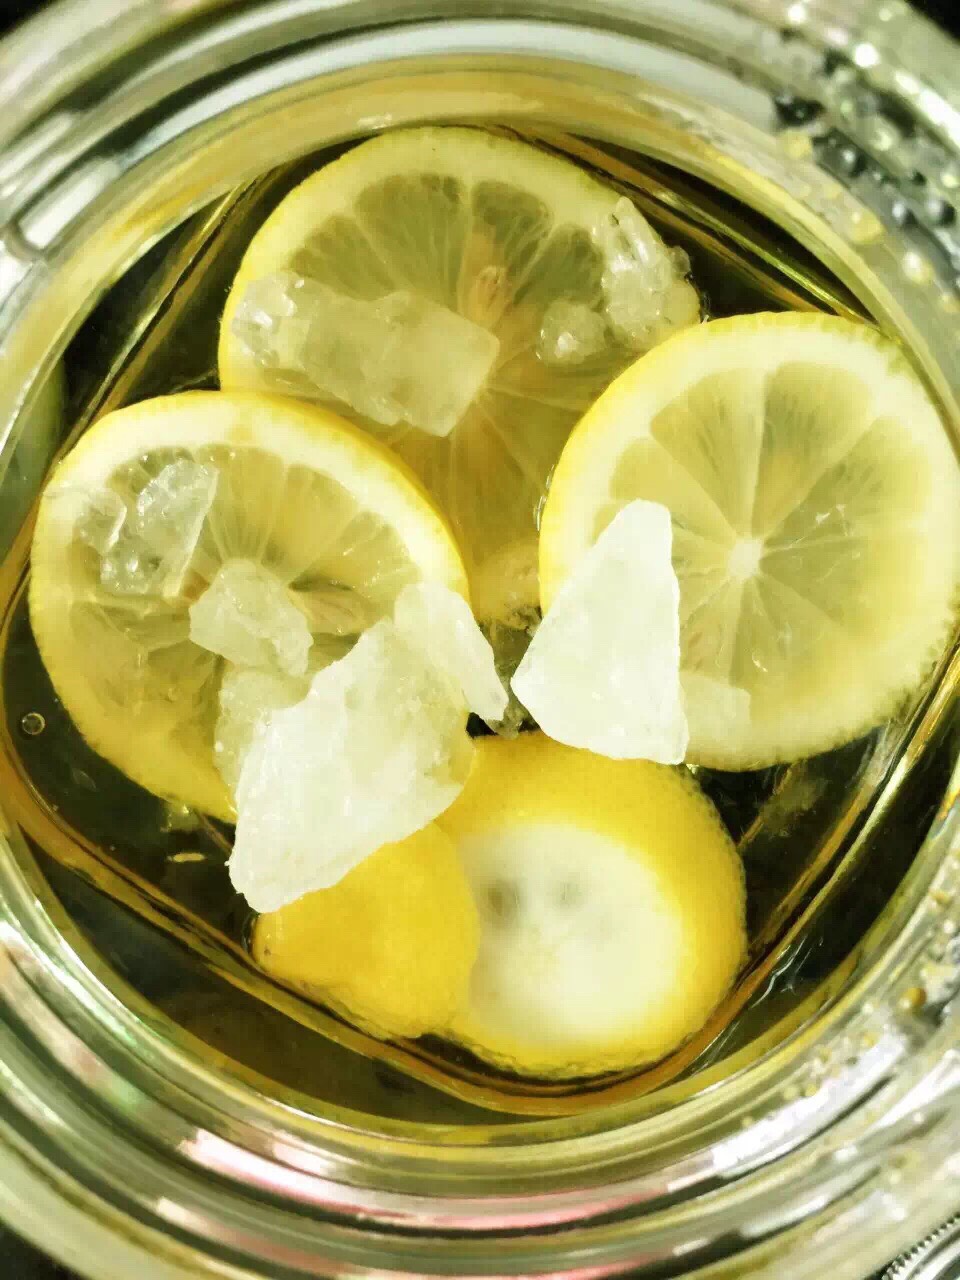 柠檬77白醋77冰糖:三者叠加的效果是小于3还是大于3斑点不置可否